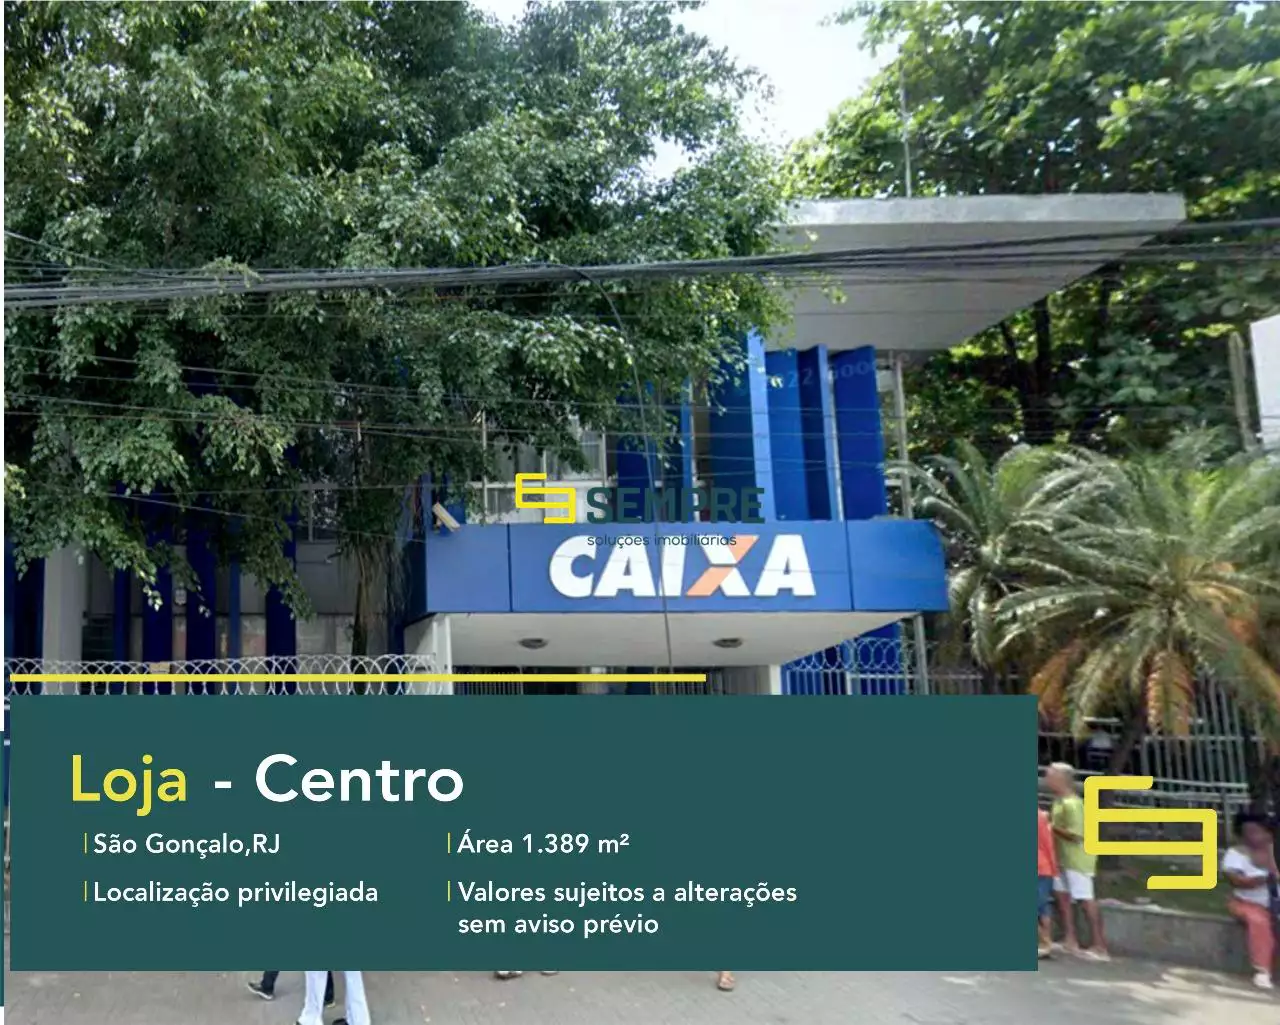 Loja para locação em São Gonçalo - Rio de Janeiro, em excelente localização. O estabelecimento comercial conta com área de 1.389 m².